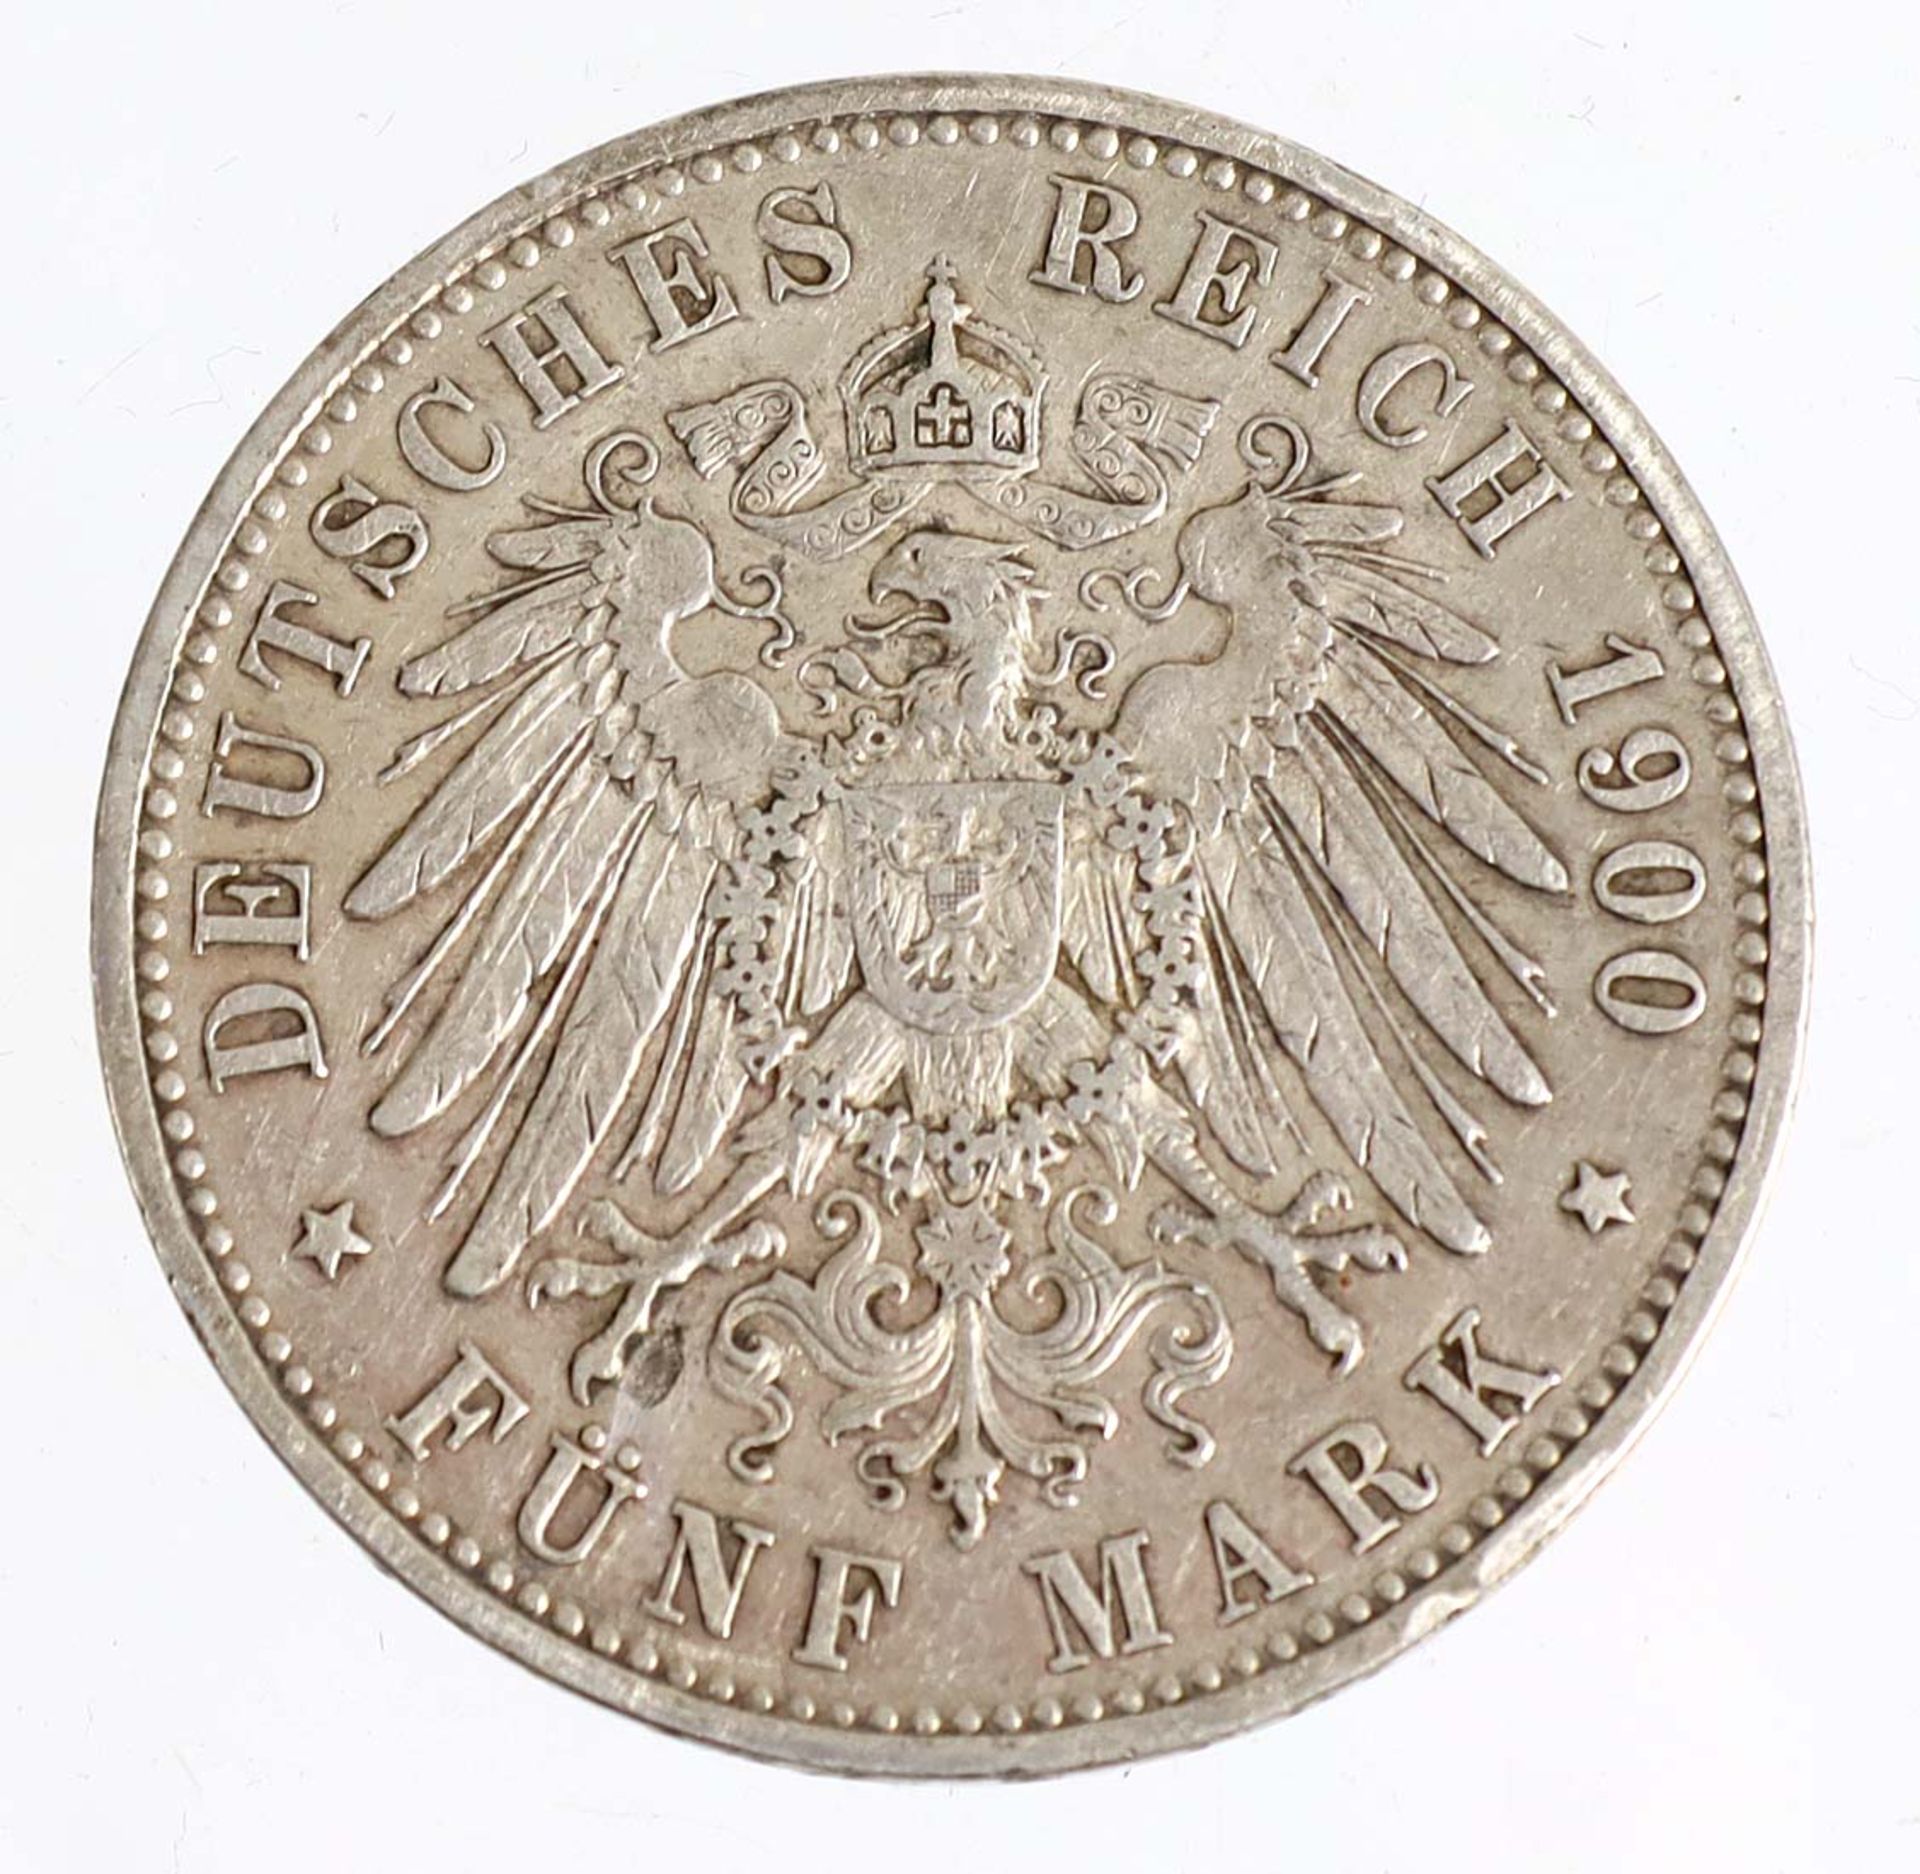 5 Mark Wilhelm II Wuerttemberg 1900 FSilbermünze Fünf Mark Deutsches Reich 1900, so - Bild 2 aus 2